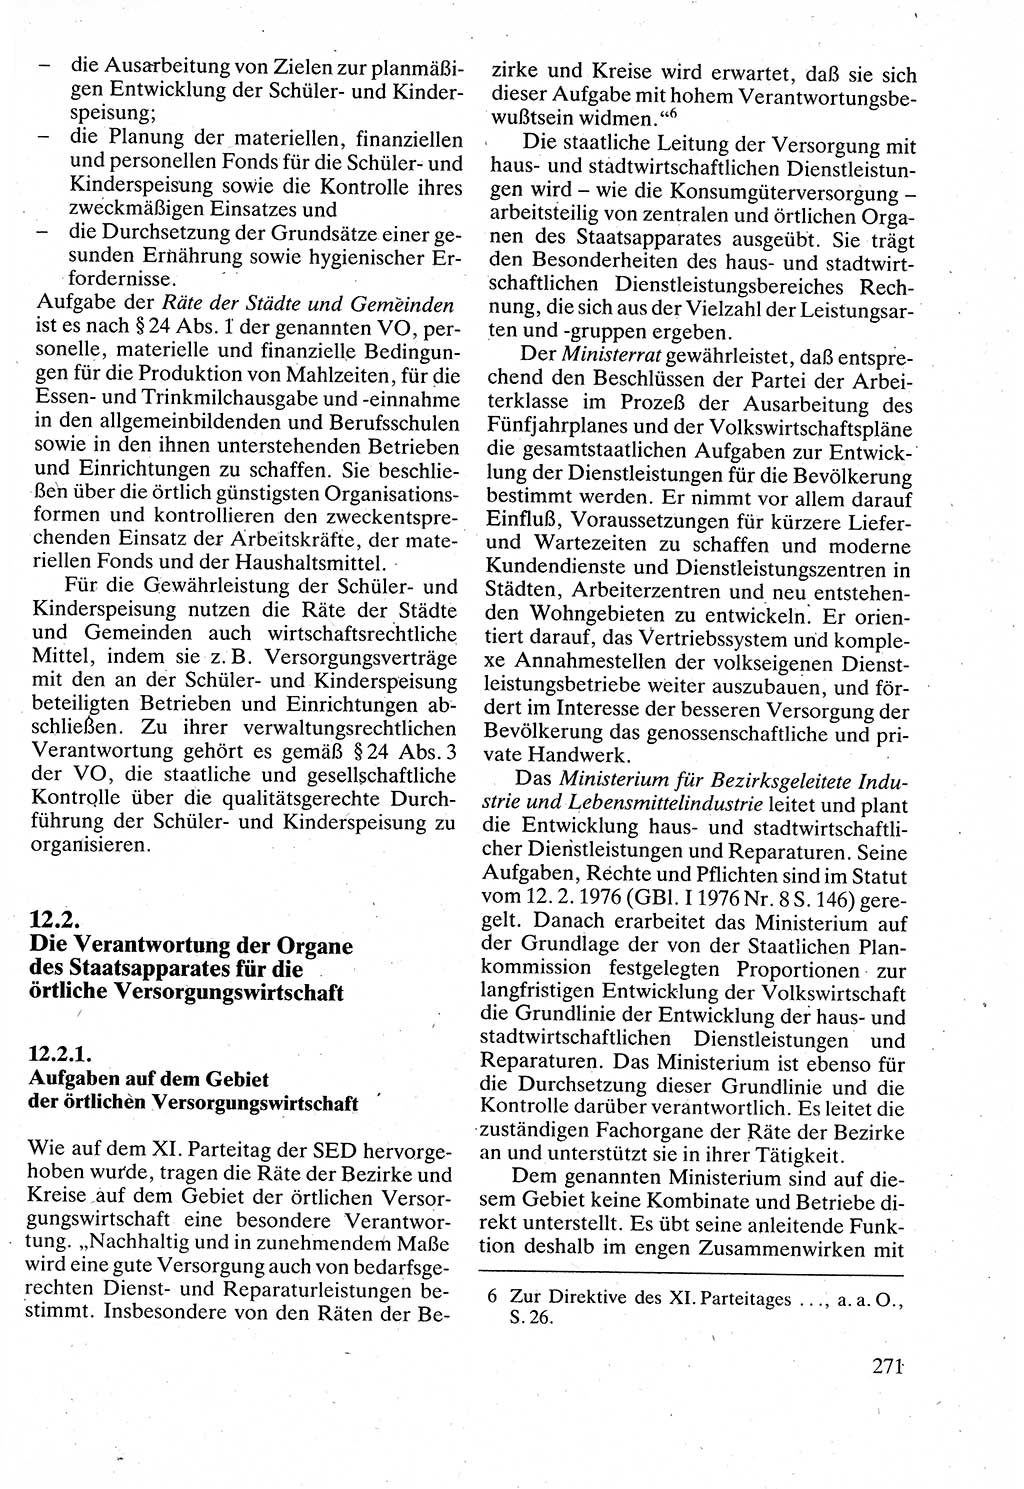 Verwaltungsrecht [Deutsche Demokratische Republik (DDR)], Lehrbuch 1988, Seite 271 (Verw.-R. DDR Lb. 1988, S. 271)